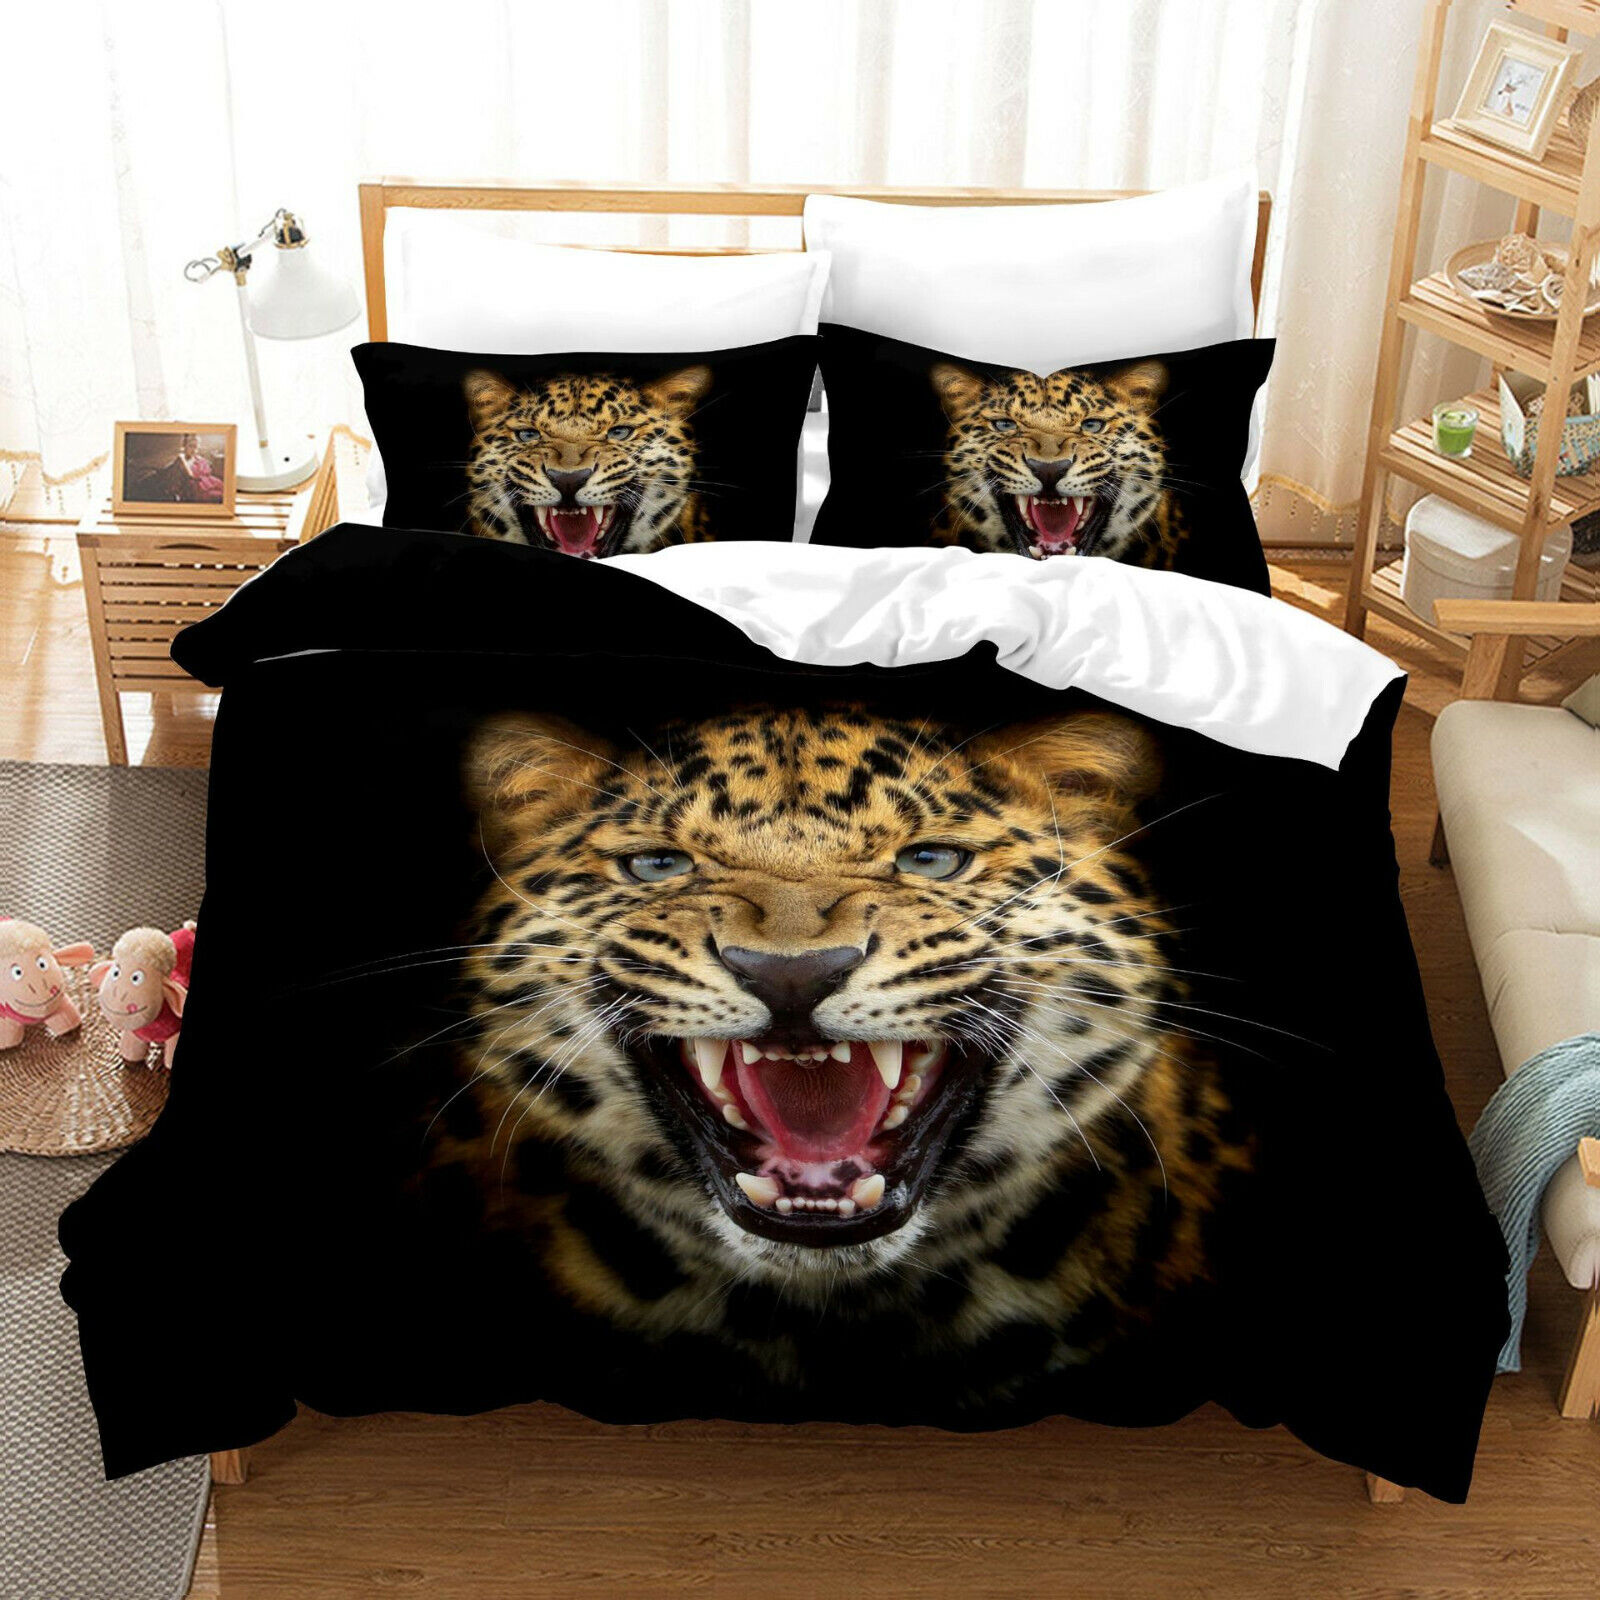 The Lions 3D Quilt Cover Bedding Set 3PCS Duvet Cover Pillowcase UK/EU Size Cena, najnowsza praca